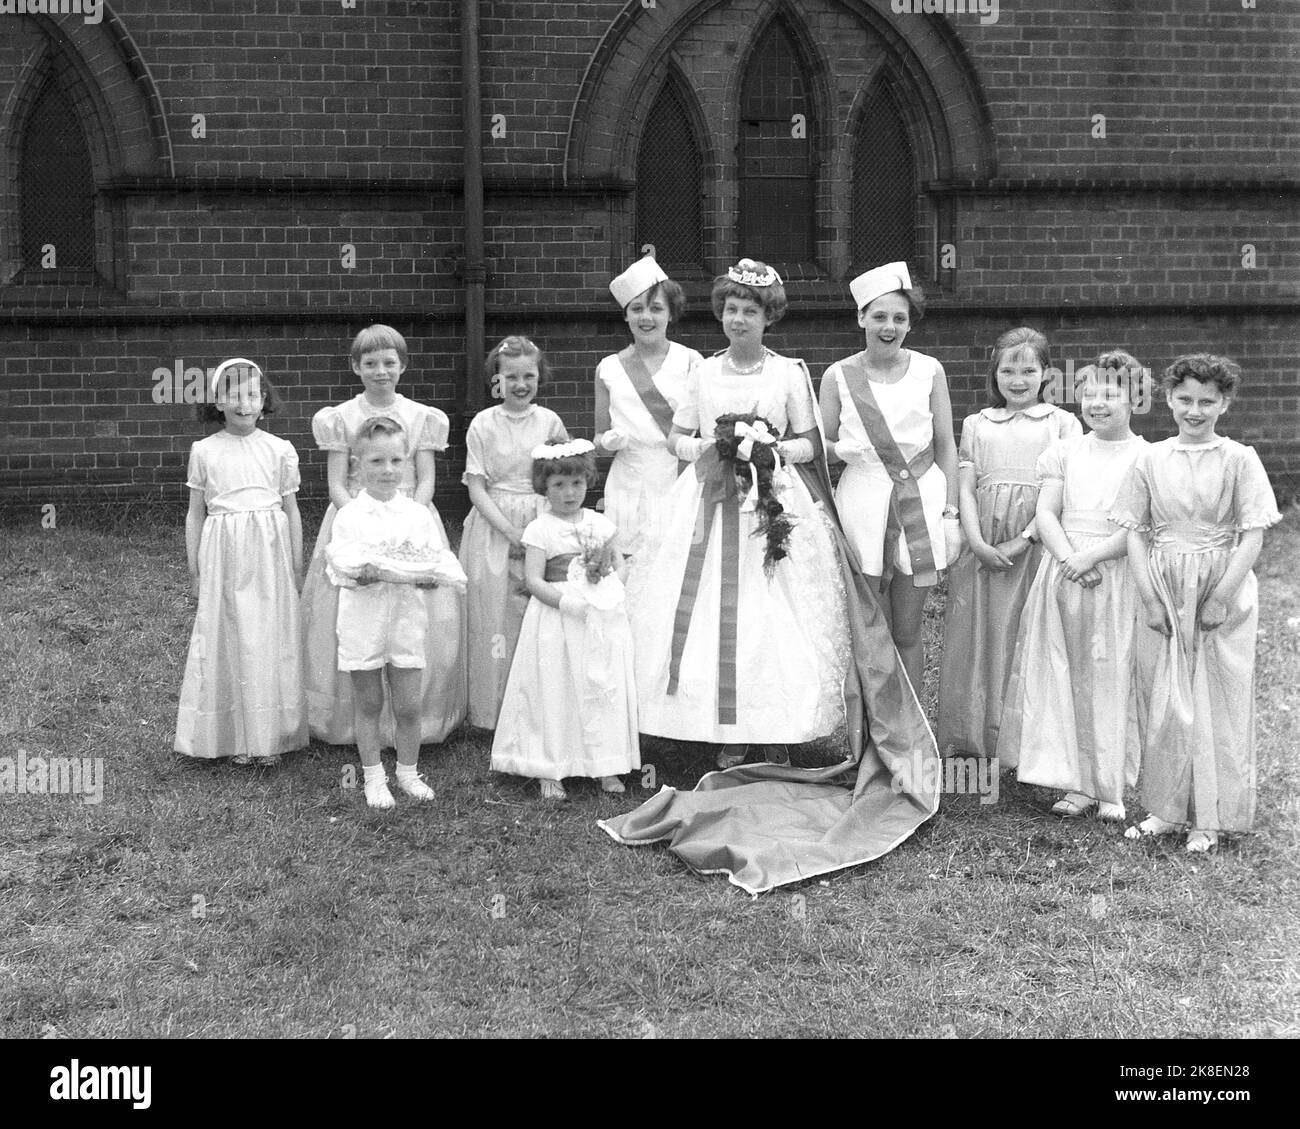 1962, historisch, Maifeiertag, draußen auf dem Gelände einer Kirche und der diesjährigen Maikönigin, stehend mit anderen Kindern in ihren langen Kleidern für das traditionelle Fest, das den Sommer feiert, Leeds, England, Großbritannien. Ein kleiner Junge, der einzige Mann, der das Kissen für die Krone hält. Stockfoto